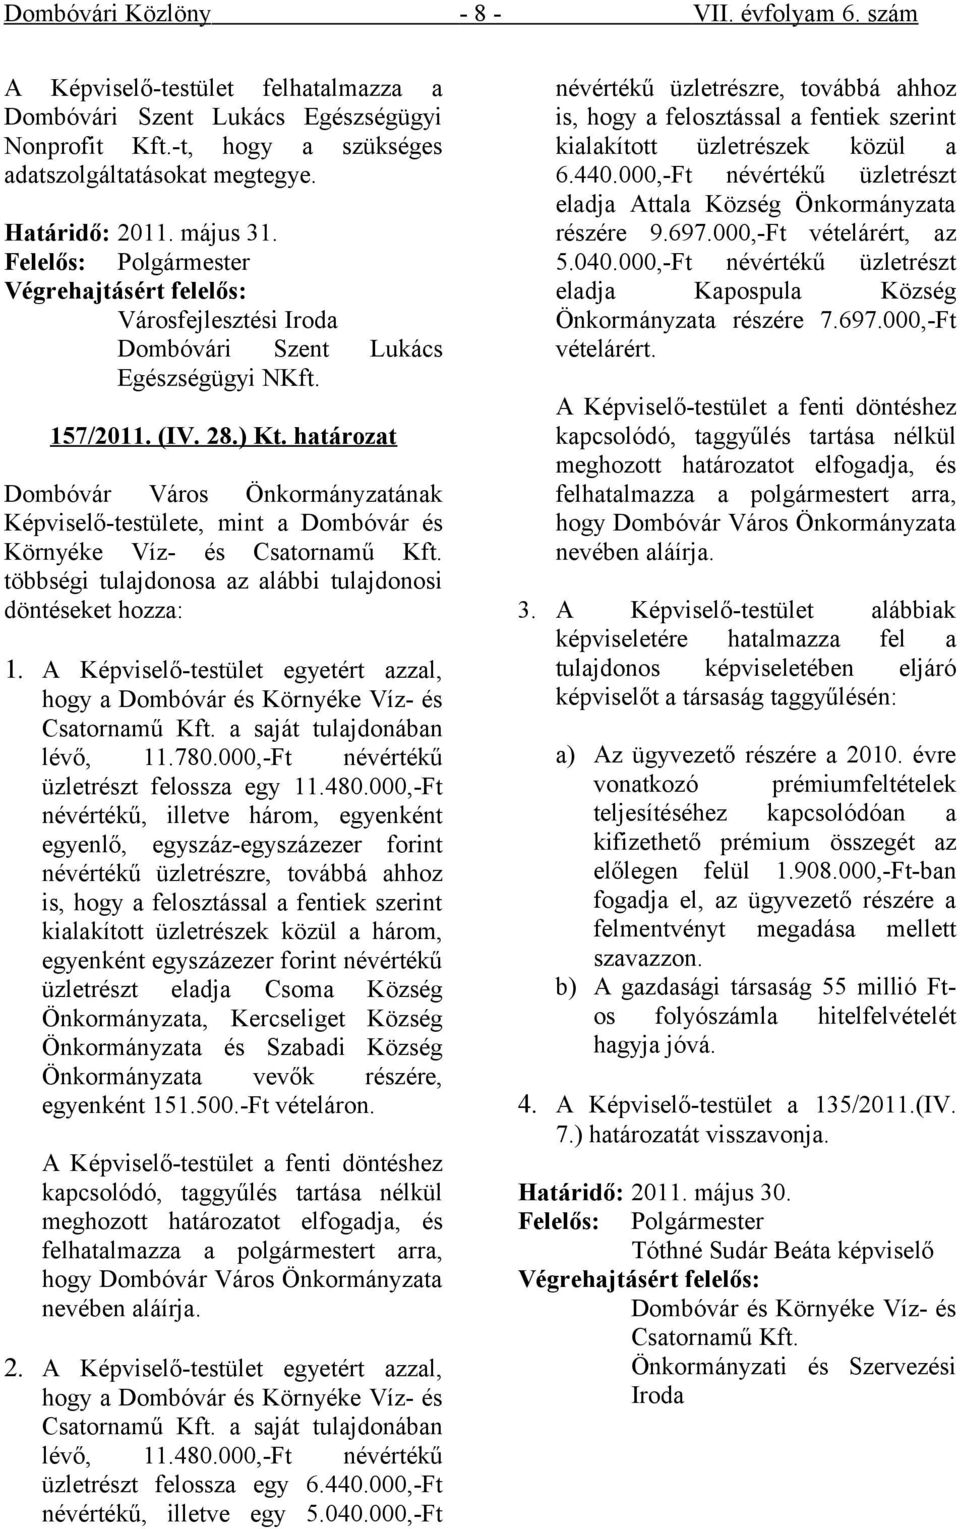 határozat Dombóvár Város Önkormányzatának Képviselő-testülete, mint a Dombóvár és Környéke Víz- és Csatornamű Kft. többségi tulajdonosa az alábbi tulajdonosi döntéseket hozza: 1.